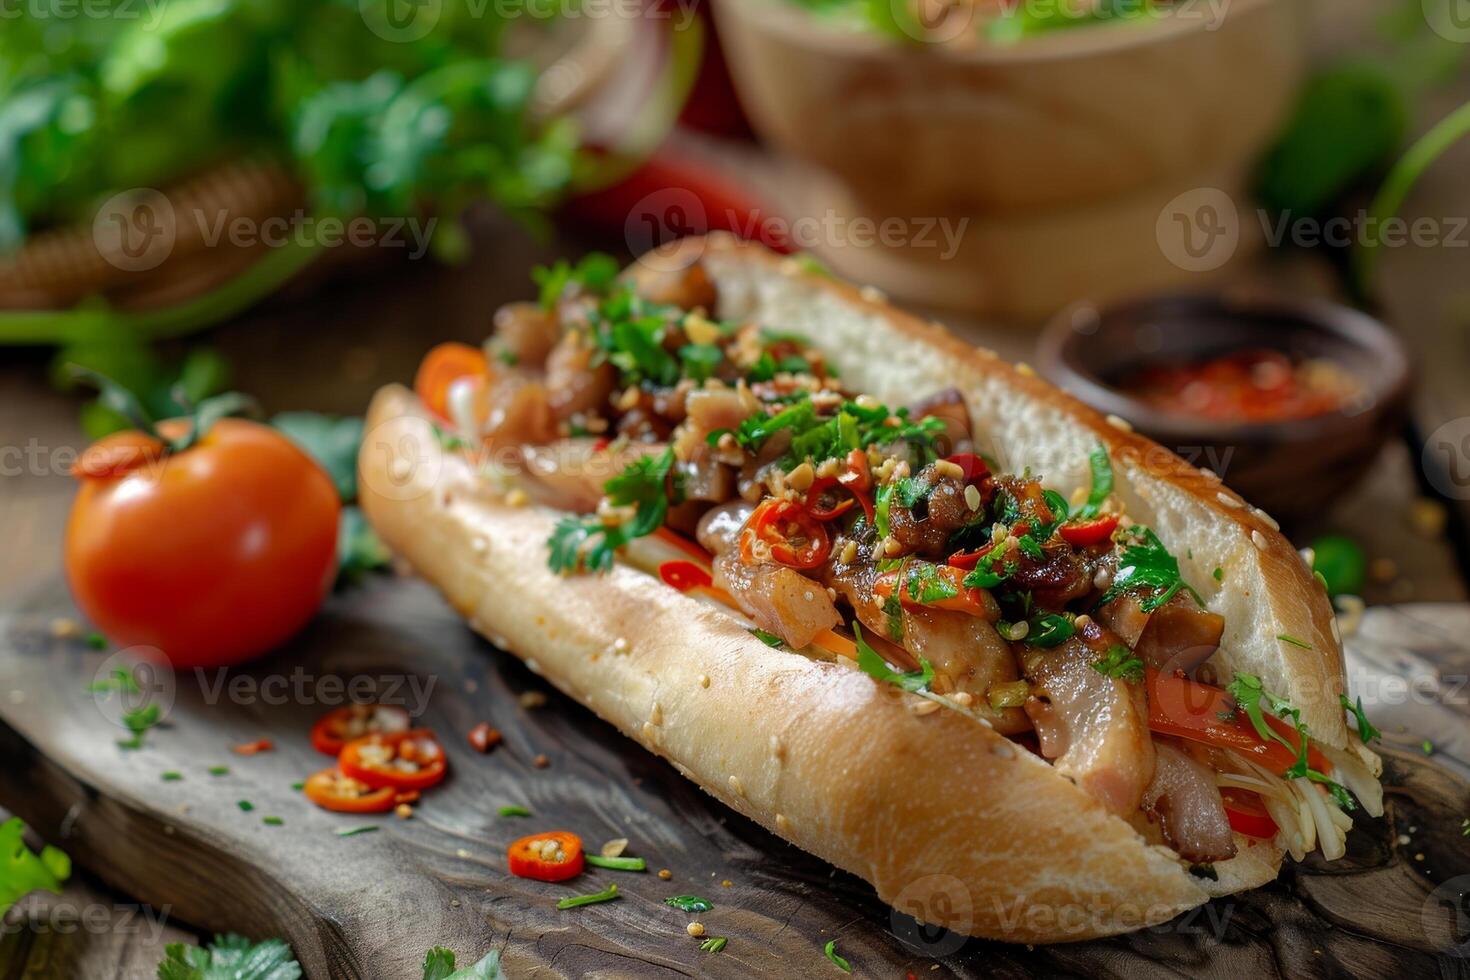 köstlich Sandwich mit Fleisch, Tomaten, Pfeffer, Koriander Grüns auf ein hölzern Tafel auf ein Hintergrund mit Zutaten foto